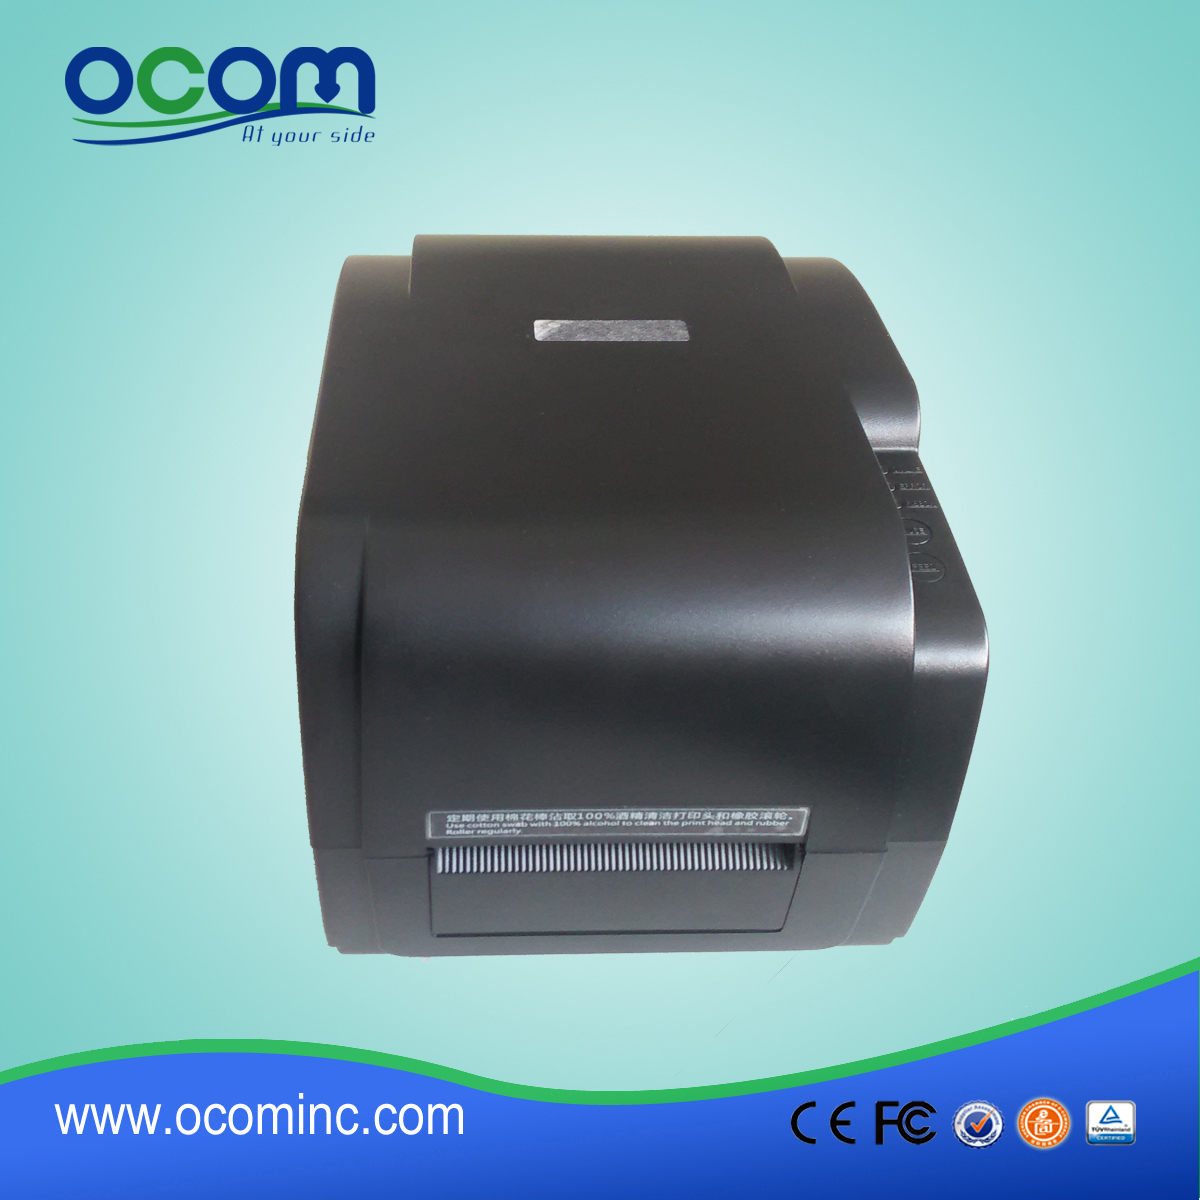 Termotransferowa i termiczna drukarka etykiet bezpośredni-003 Producent OCBP